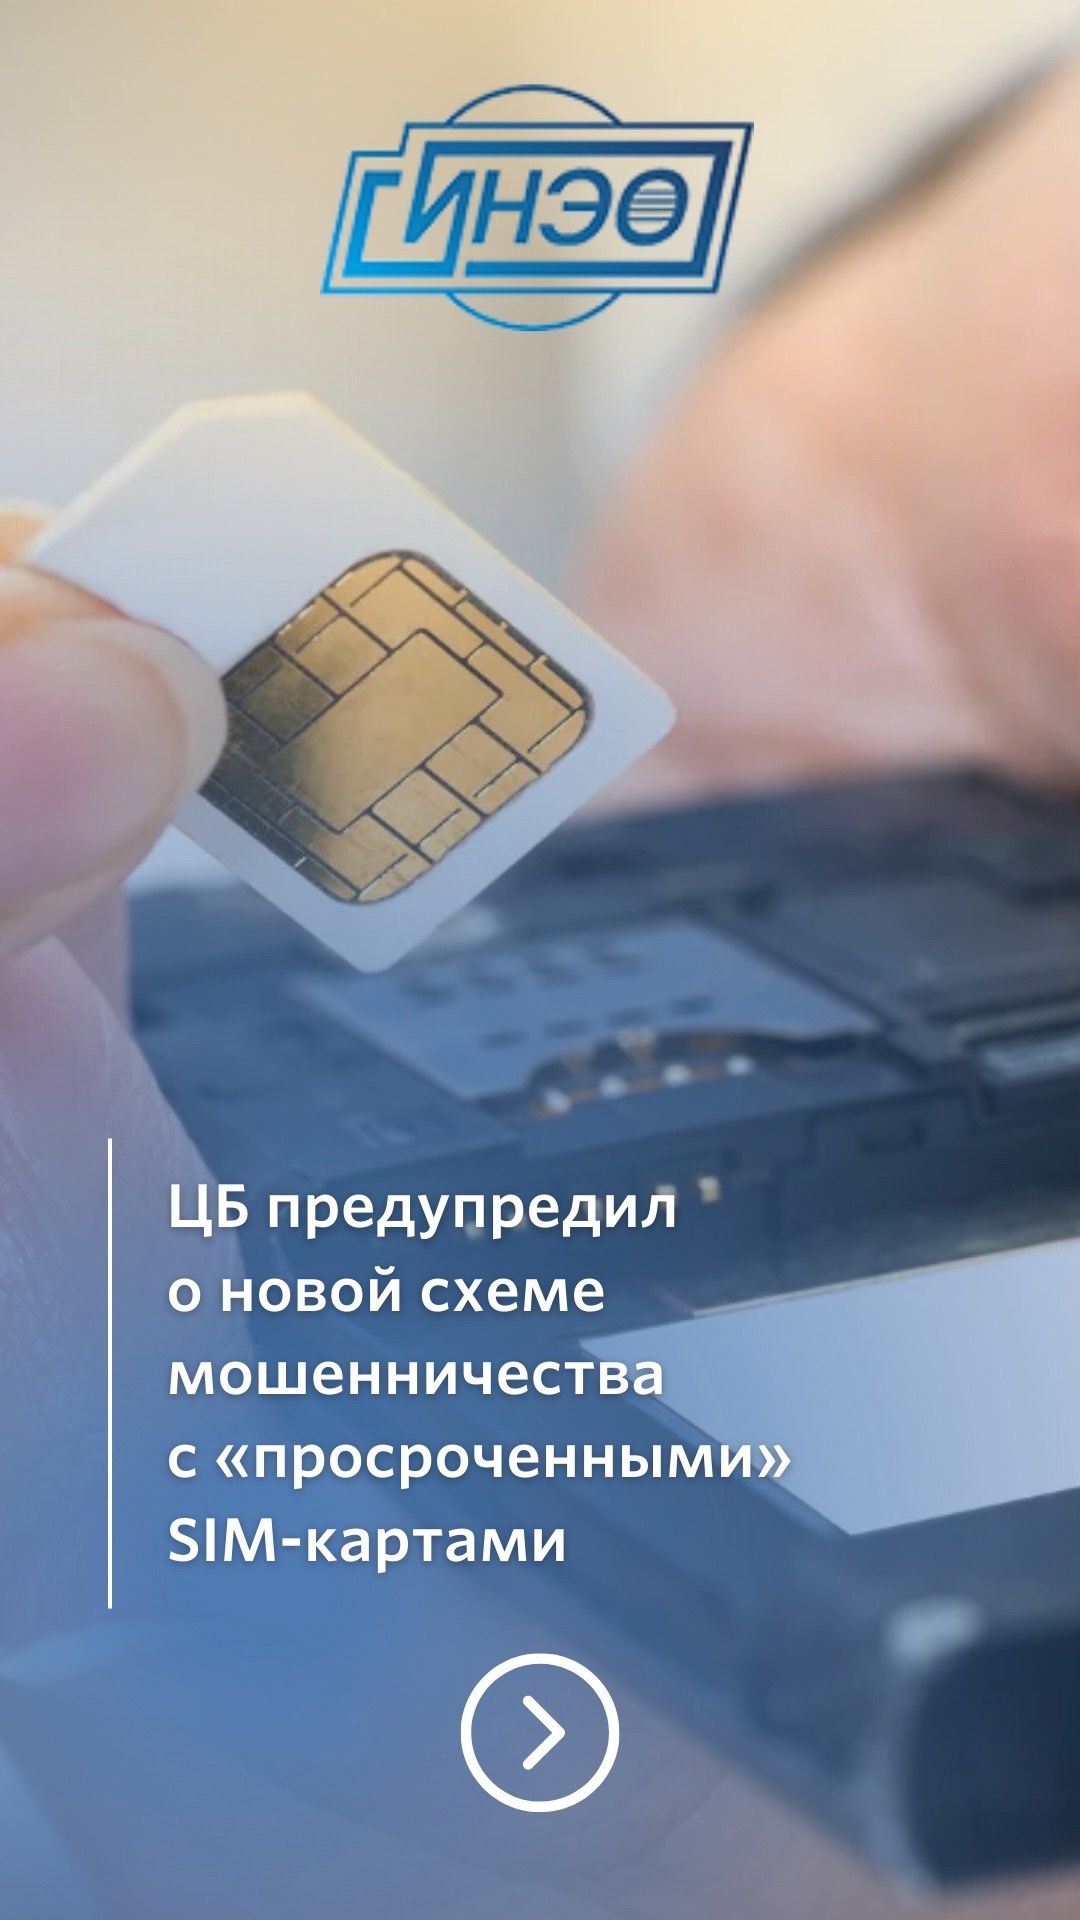 ЦБ предупредил о новой схеме мошенничества с «просроченными» SIM-картами